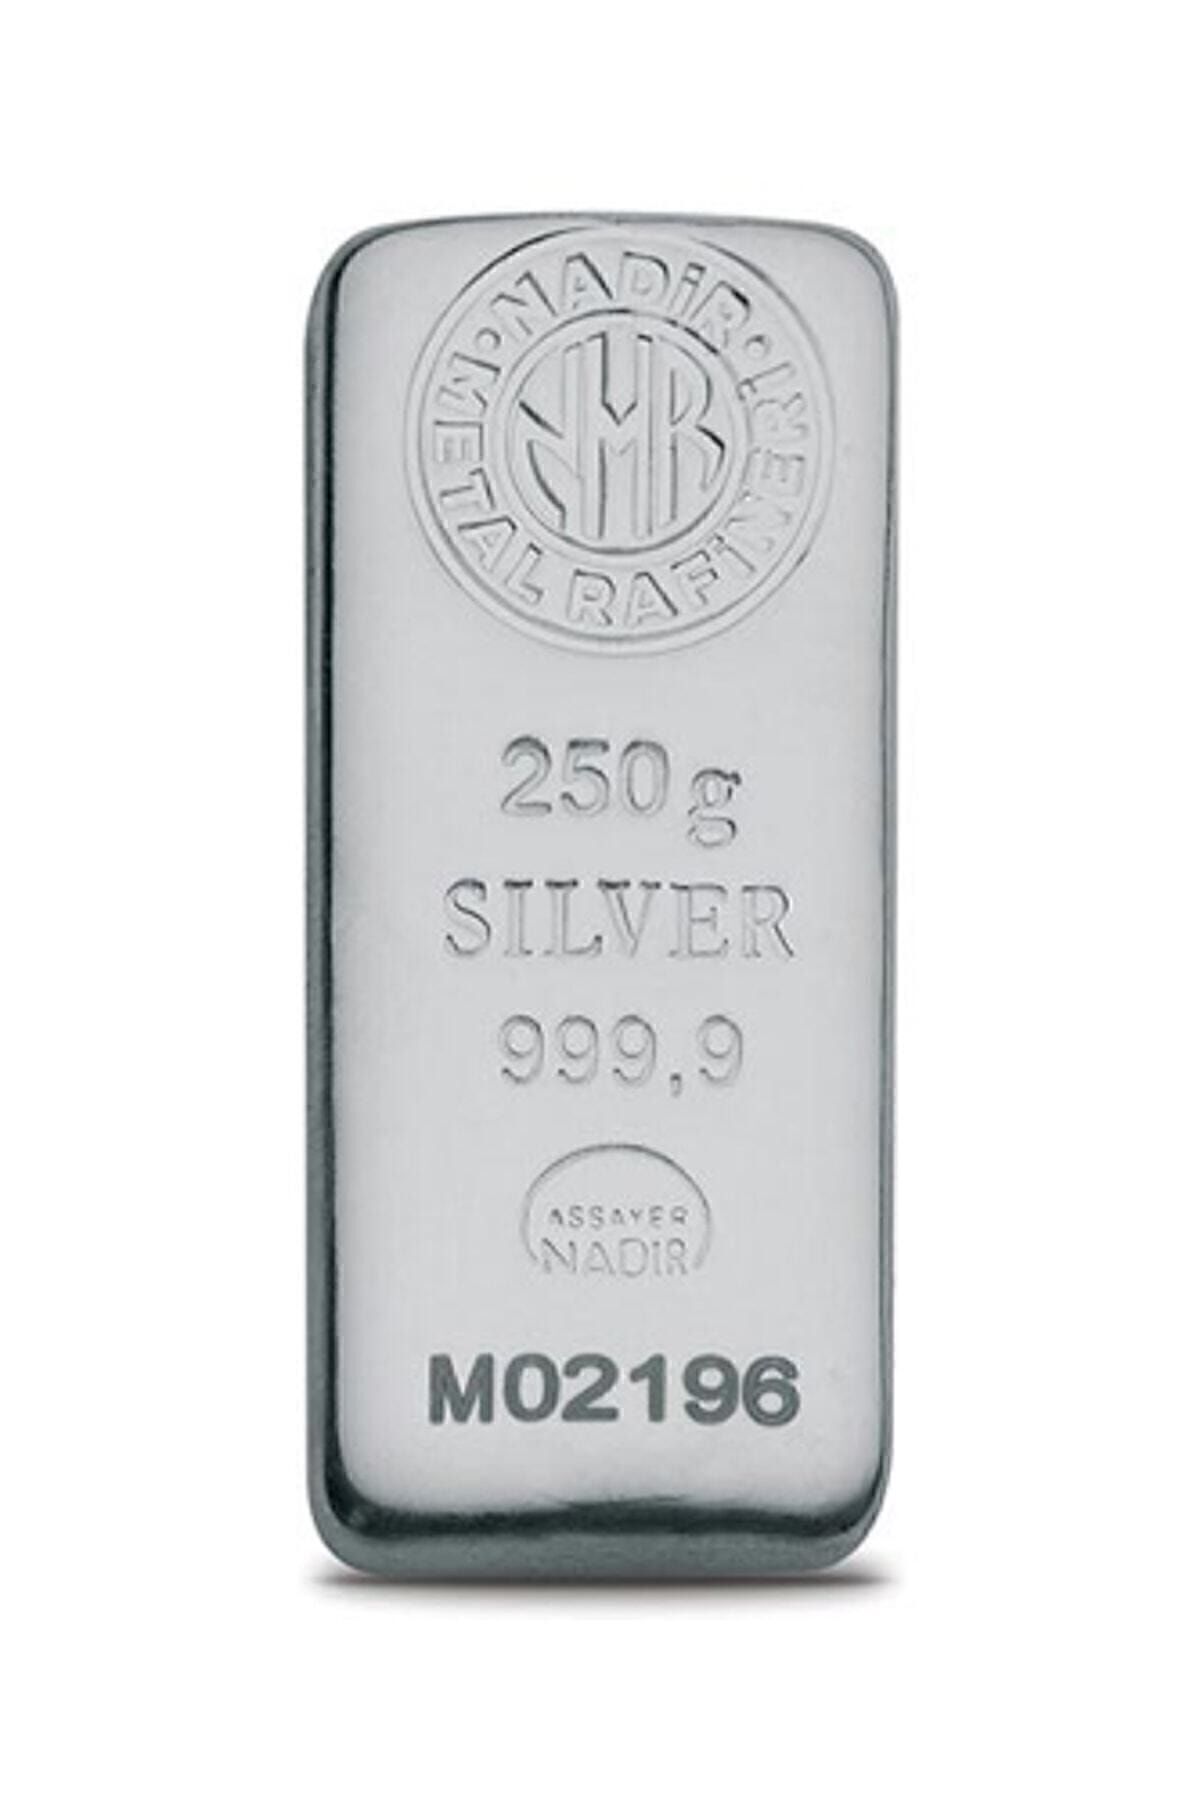 Nadir Gold Uluslararası Geçerli Faturalı 250 gr 999,9 Külçe Gümüş